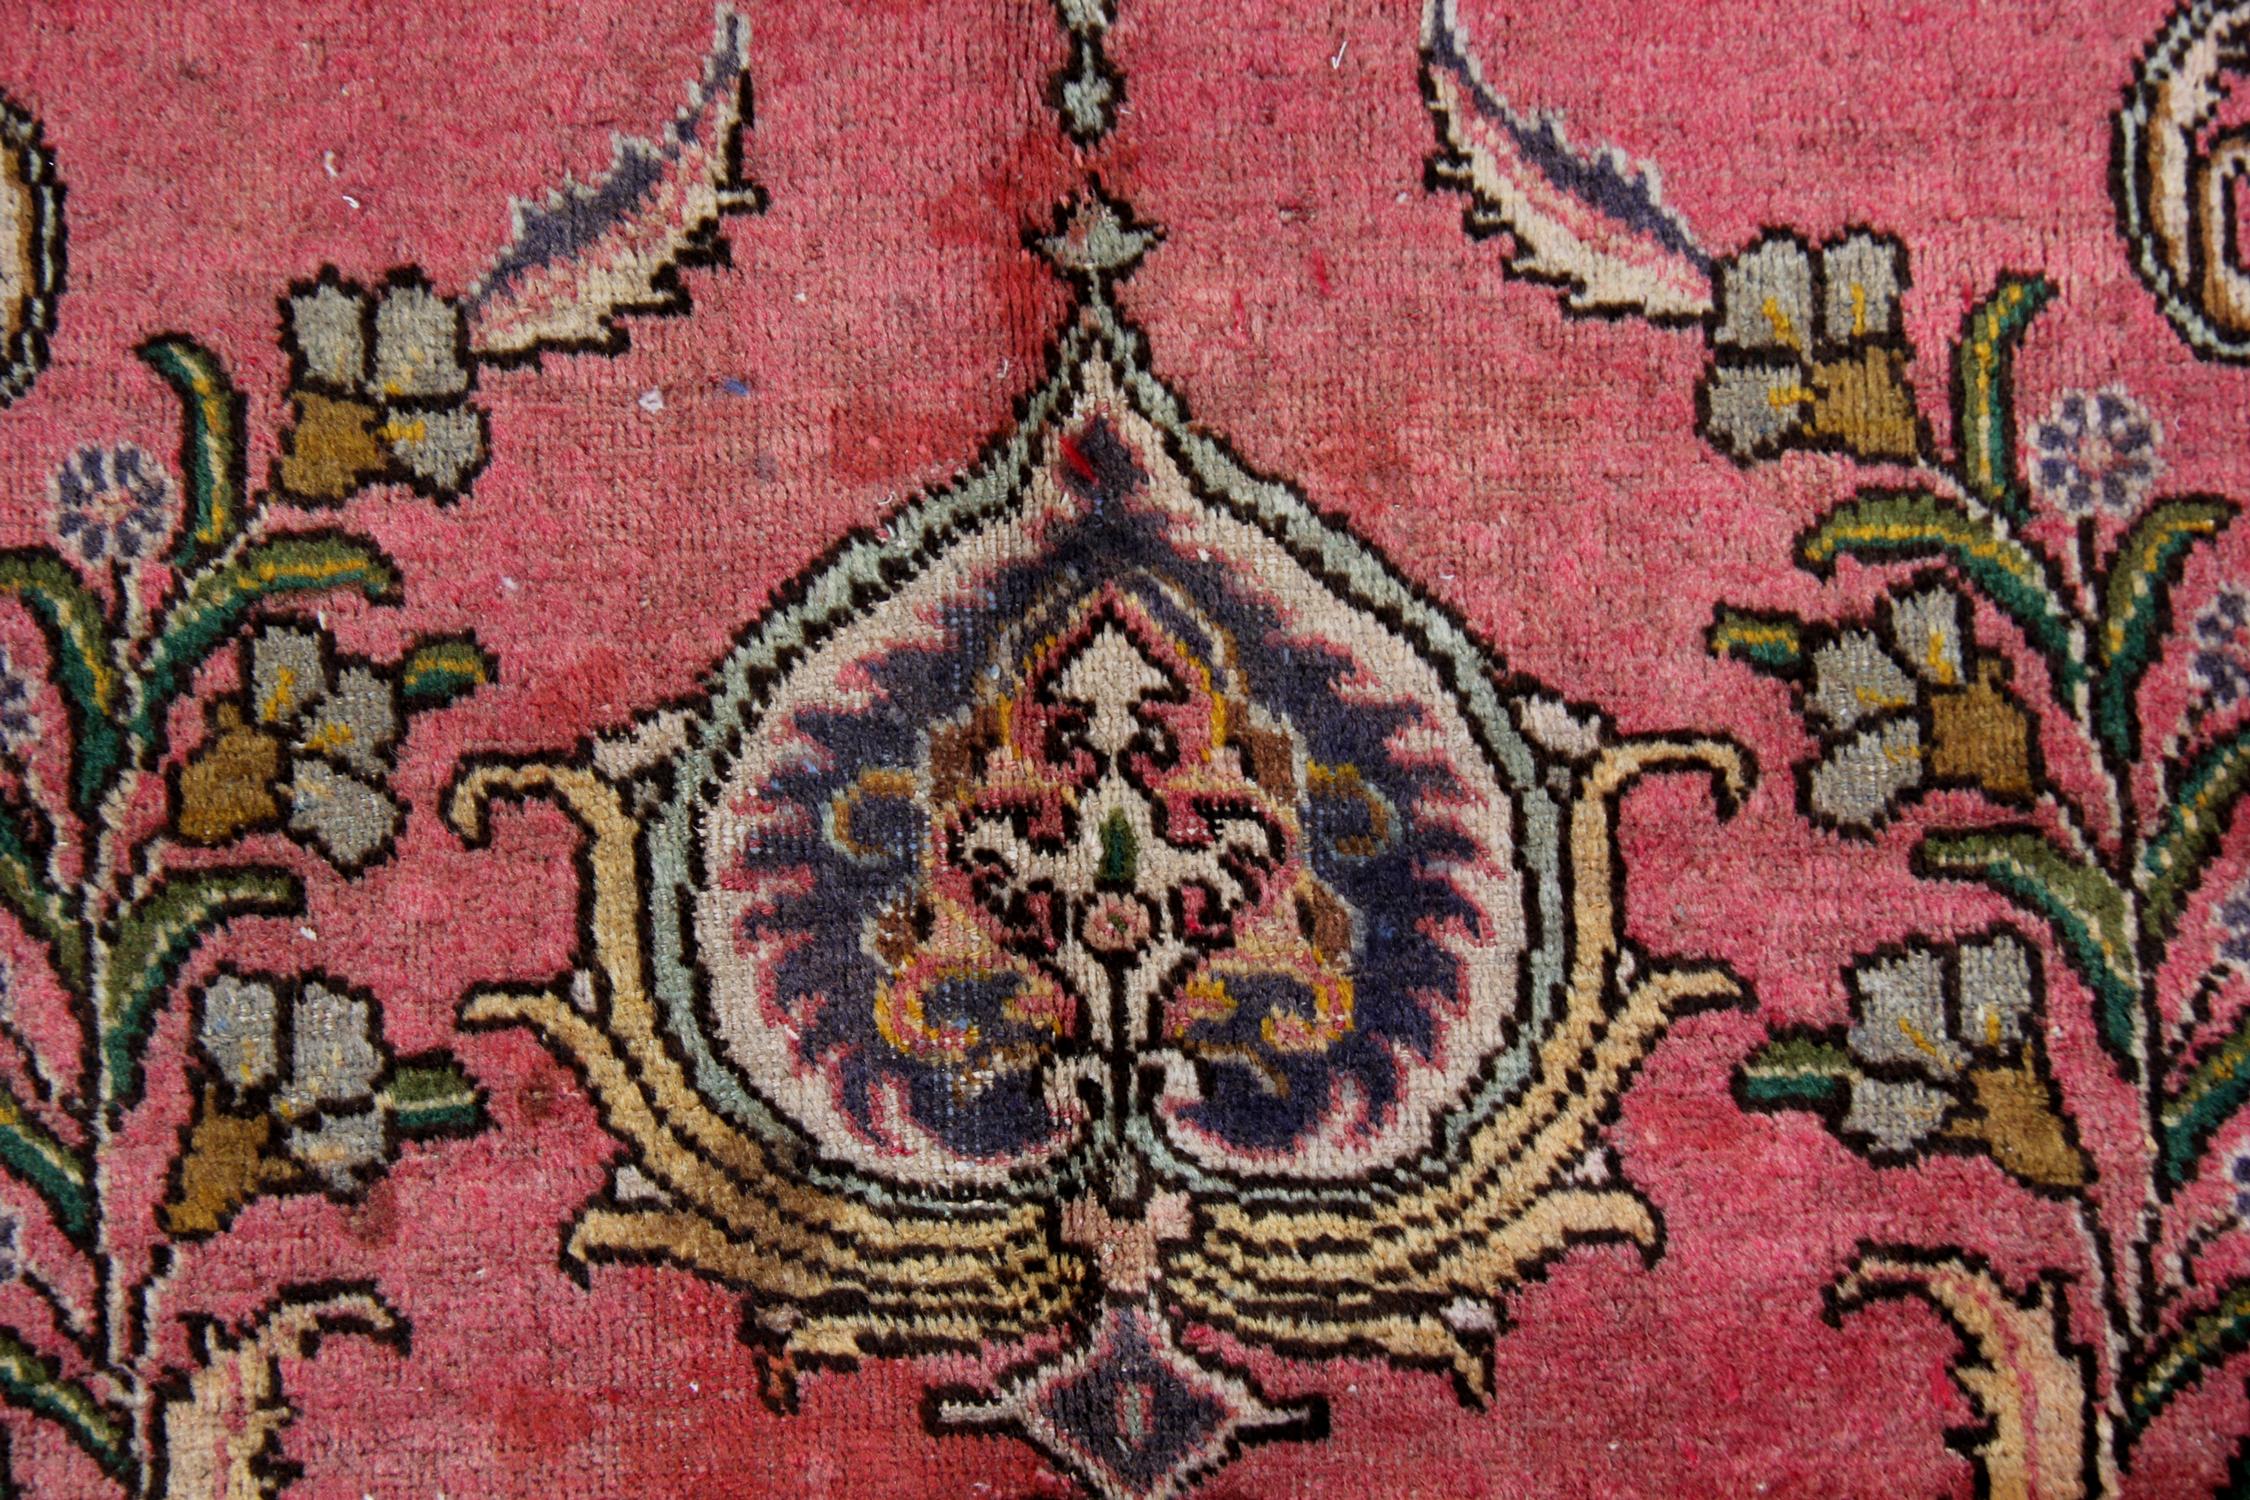 Ce luxueux tapis a été tissé sur un riche fond rouge vin avec des accents crème, bleus, verts et roses qui composent le médaillon complexe et très décoratif et le motif environnant. Le médaillon flottant et les motifs complexes qui l'entourent